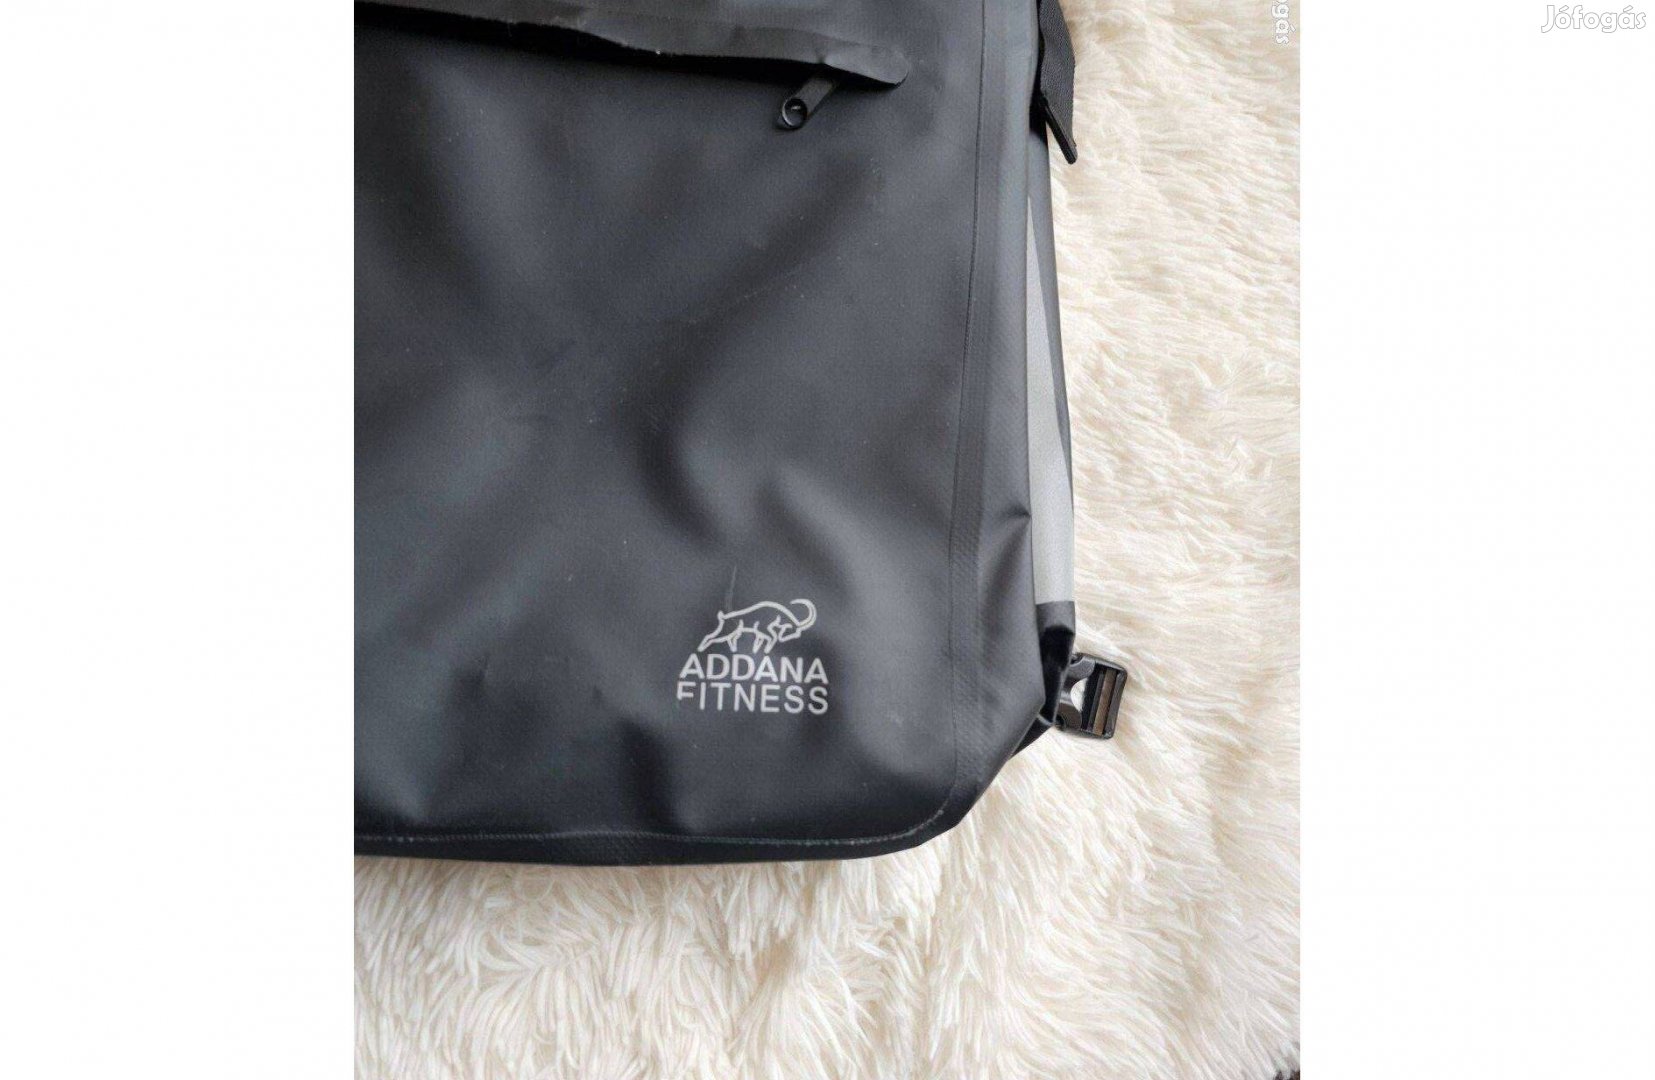 Addana Fitness kerékpáros csomag tartó táska új cimkés 18 literes Ha